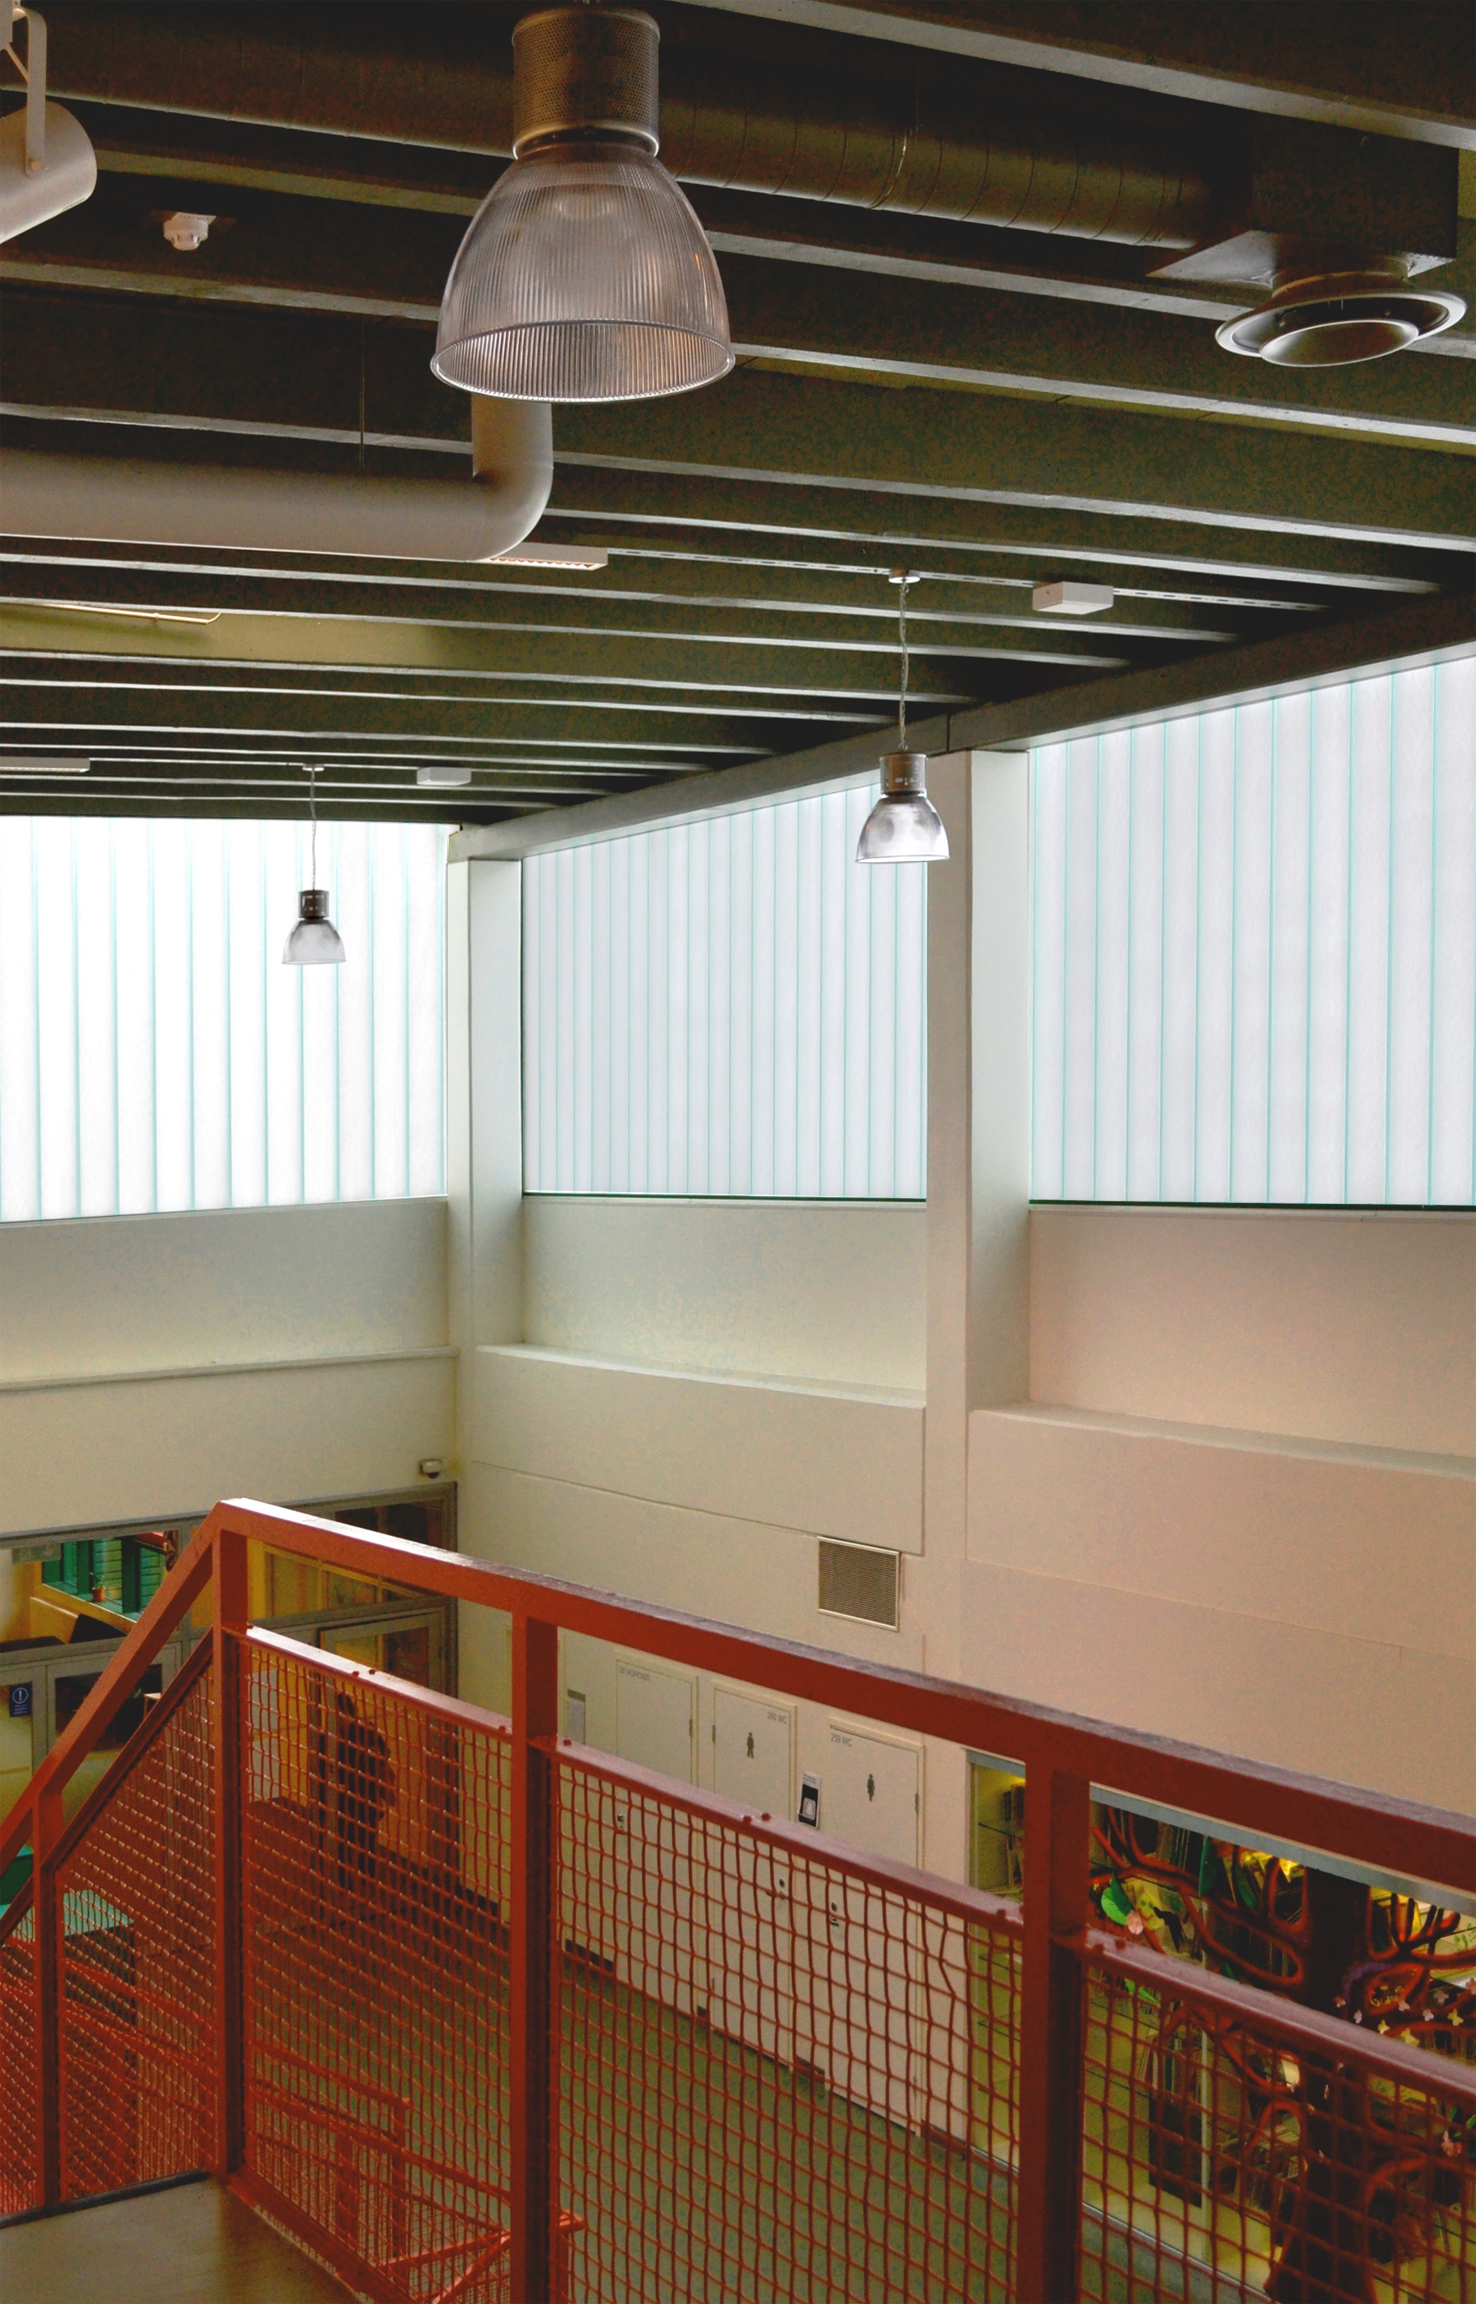 Korkea aula lasilankkuikkunoineen, harvinaisuus 1970-luvulla rakennettujen koulujen joukossa.